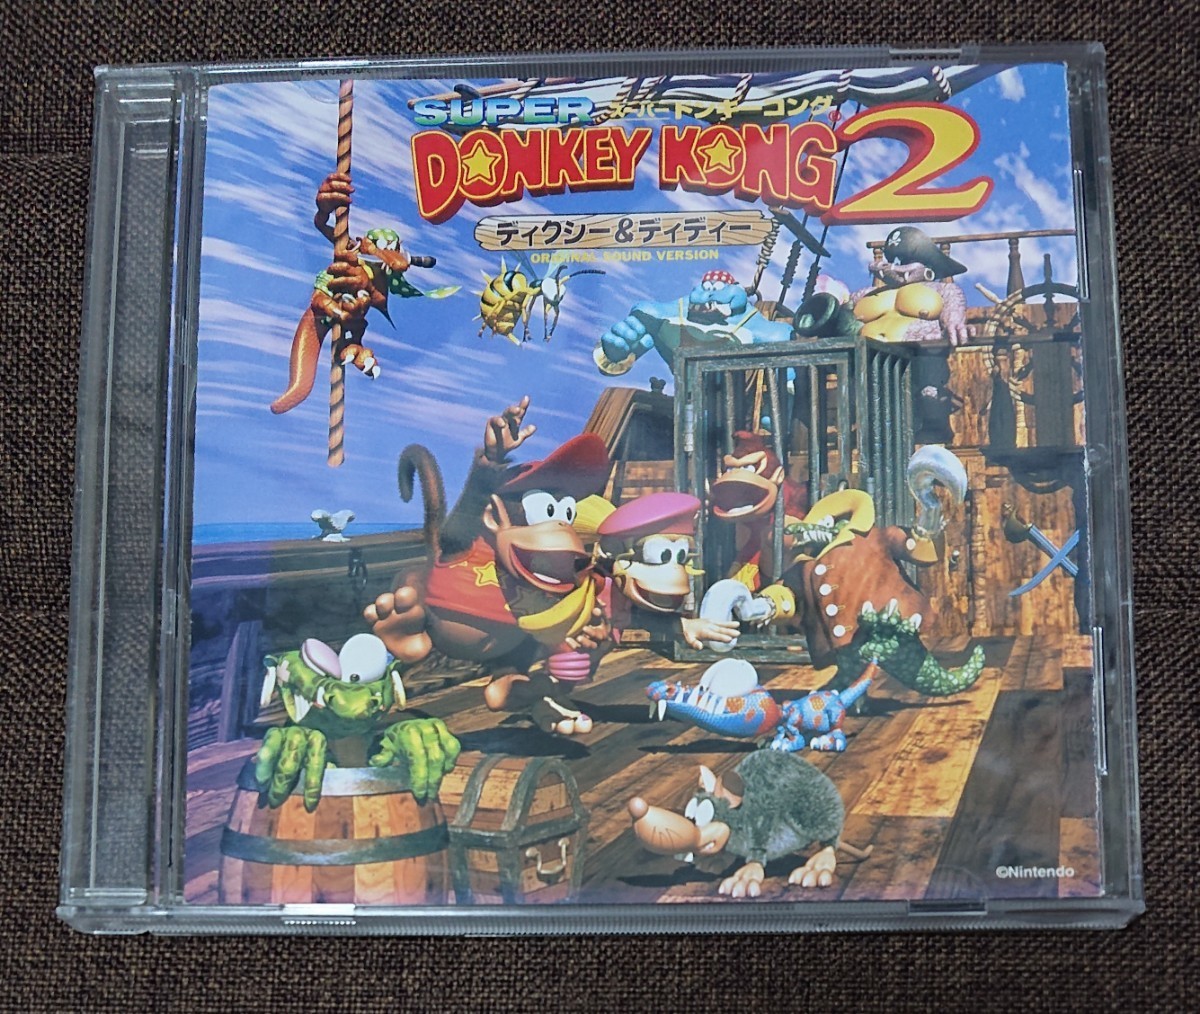 スーパードンキーコング2 Donkey Kong Country 2 オリジナルサウンドヴァージョン サウンドトラック CD ゲームミュージック サントラの画像1